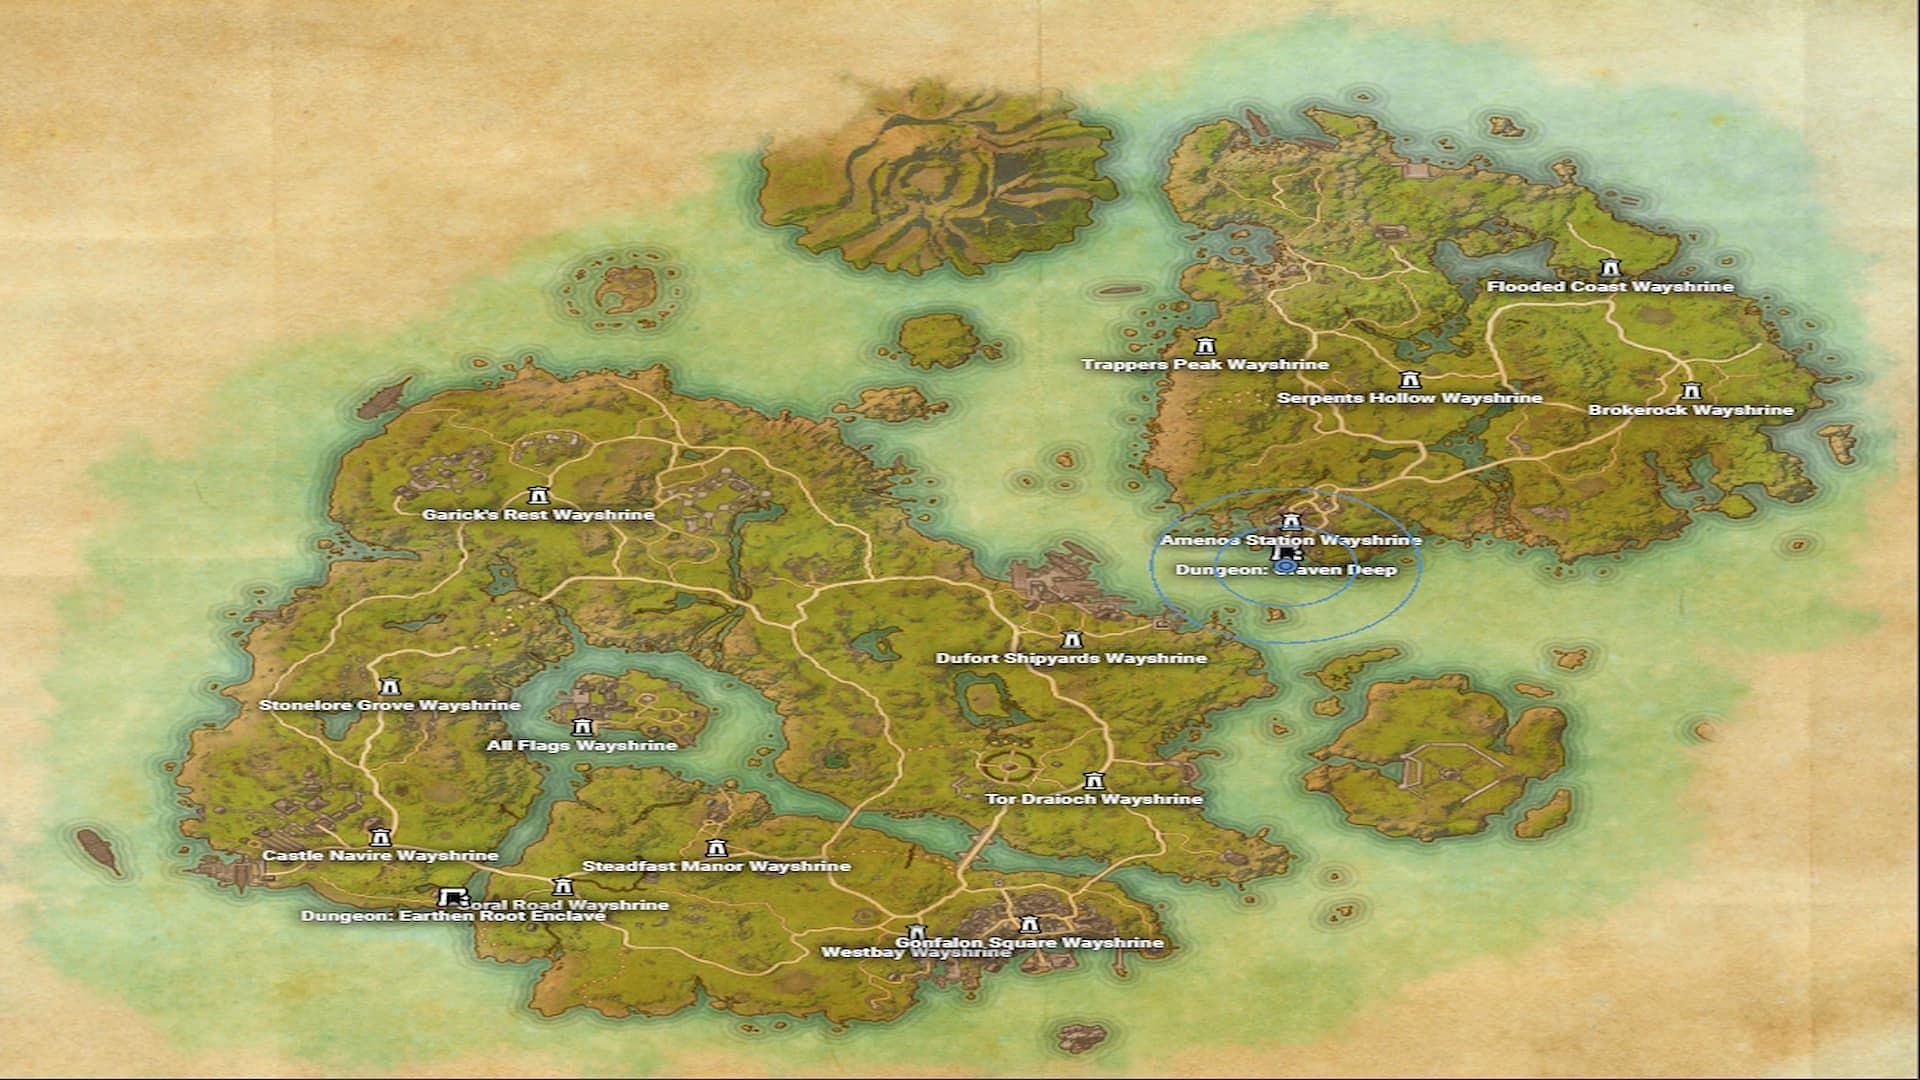 High Isle & Amenos Map - The Elder Scrolls Online (ESO)